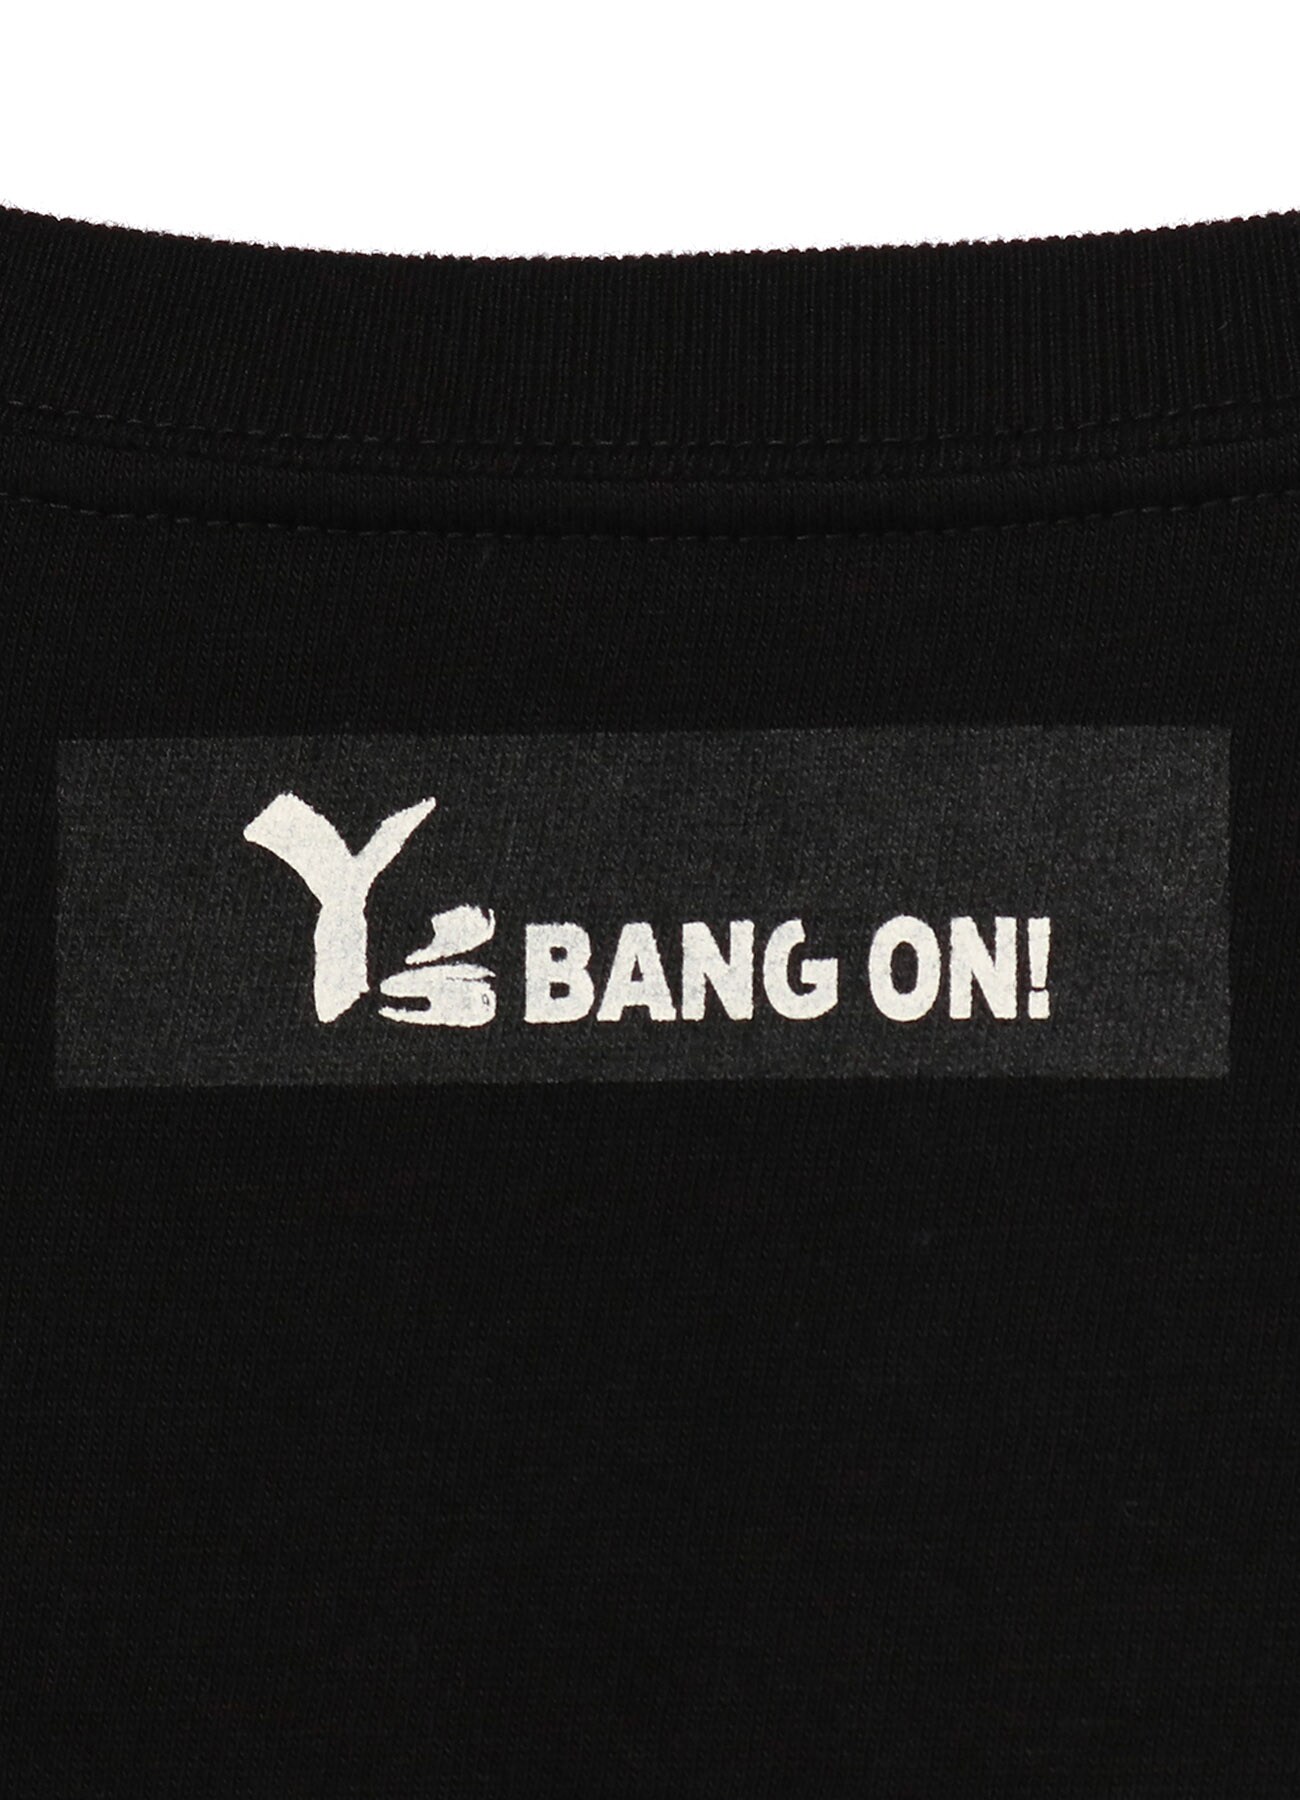 Y's BANG ON! SKATE BOARD T-Shirt